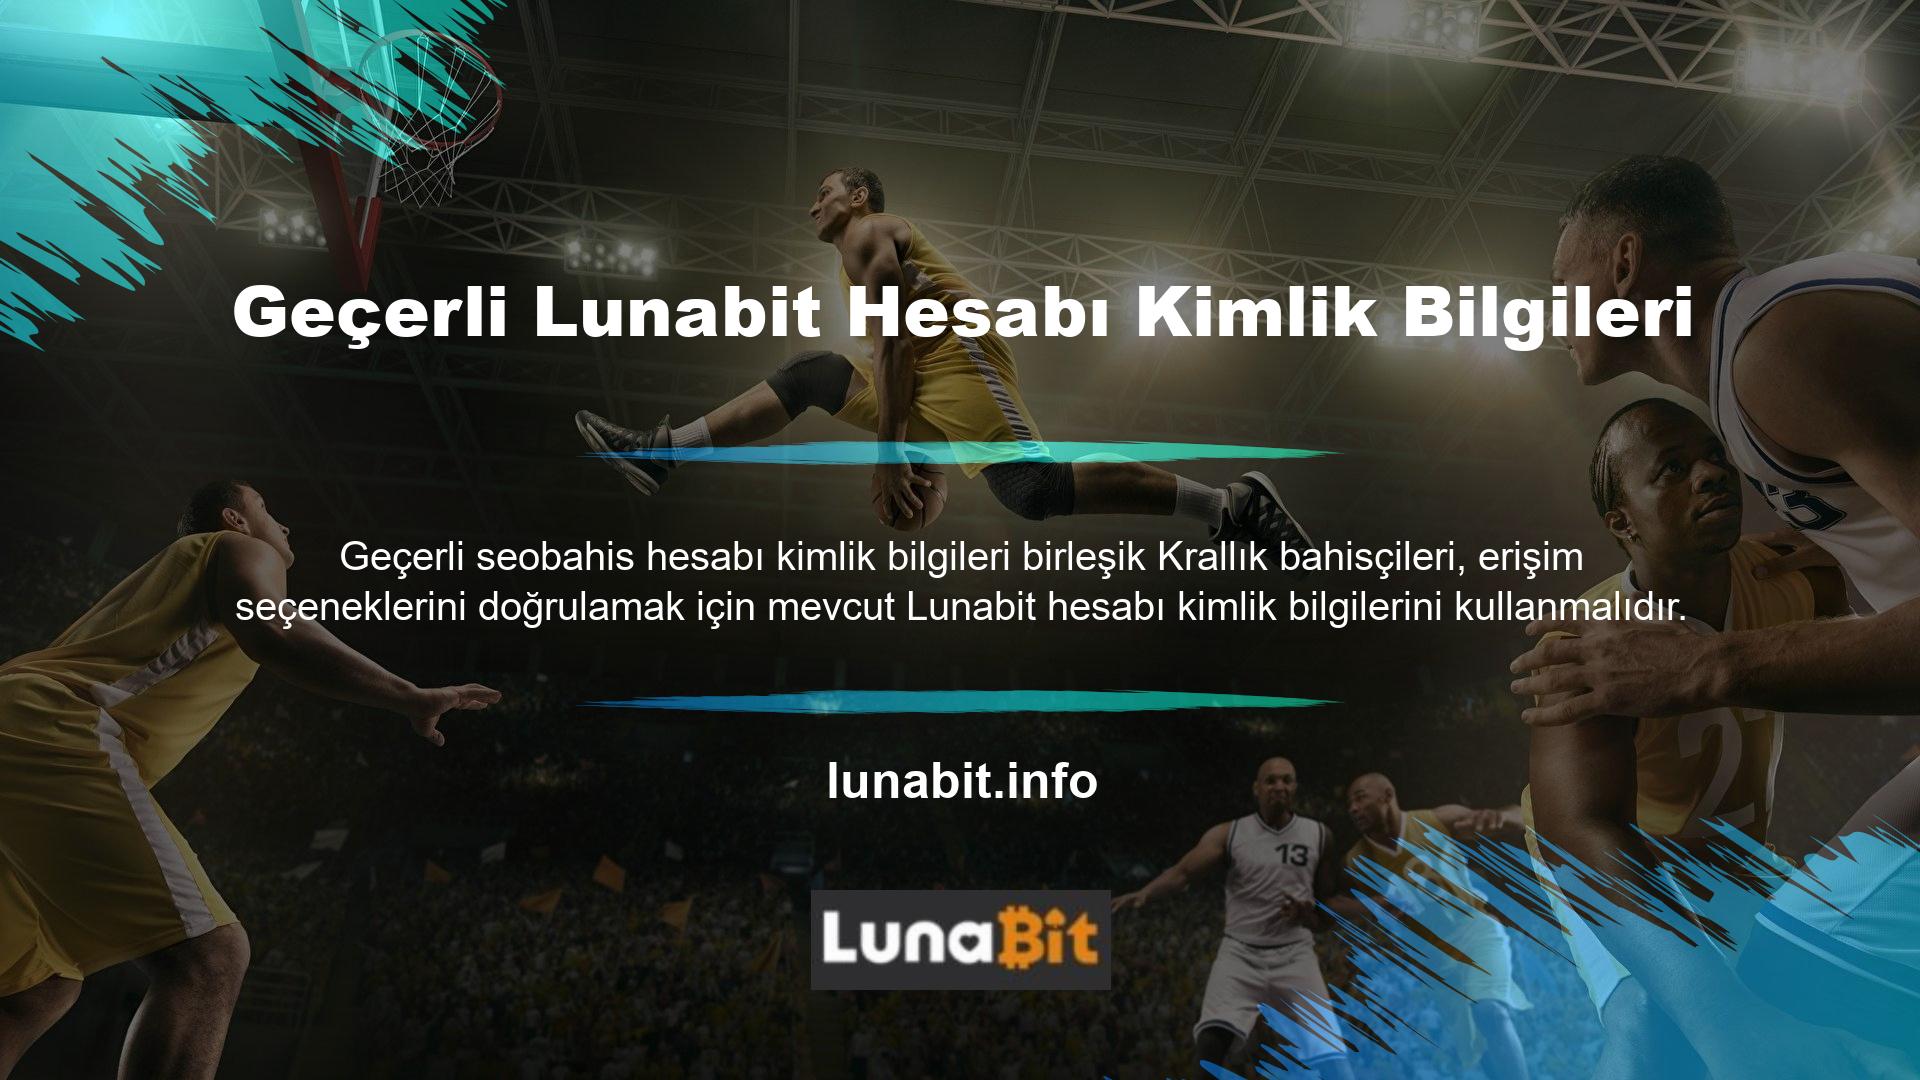 Avrupa bahis sektörüne giriş yapan bahis sitesi Lunabit, dil seçeneklerini güncelledikten sonra Türkçe dil seçenekleri ile ülkemizde faaliyet göstermeye başlamıştır